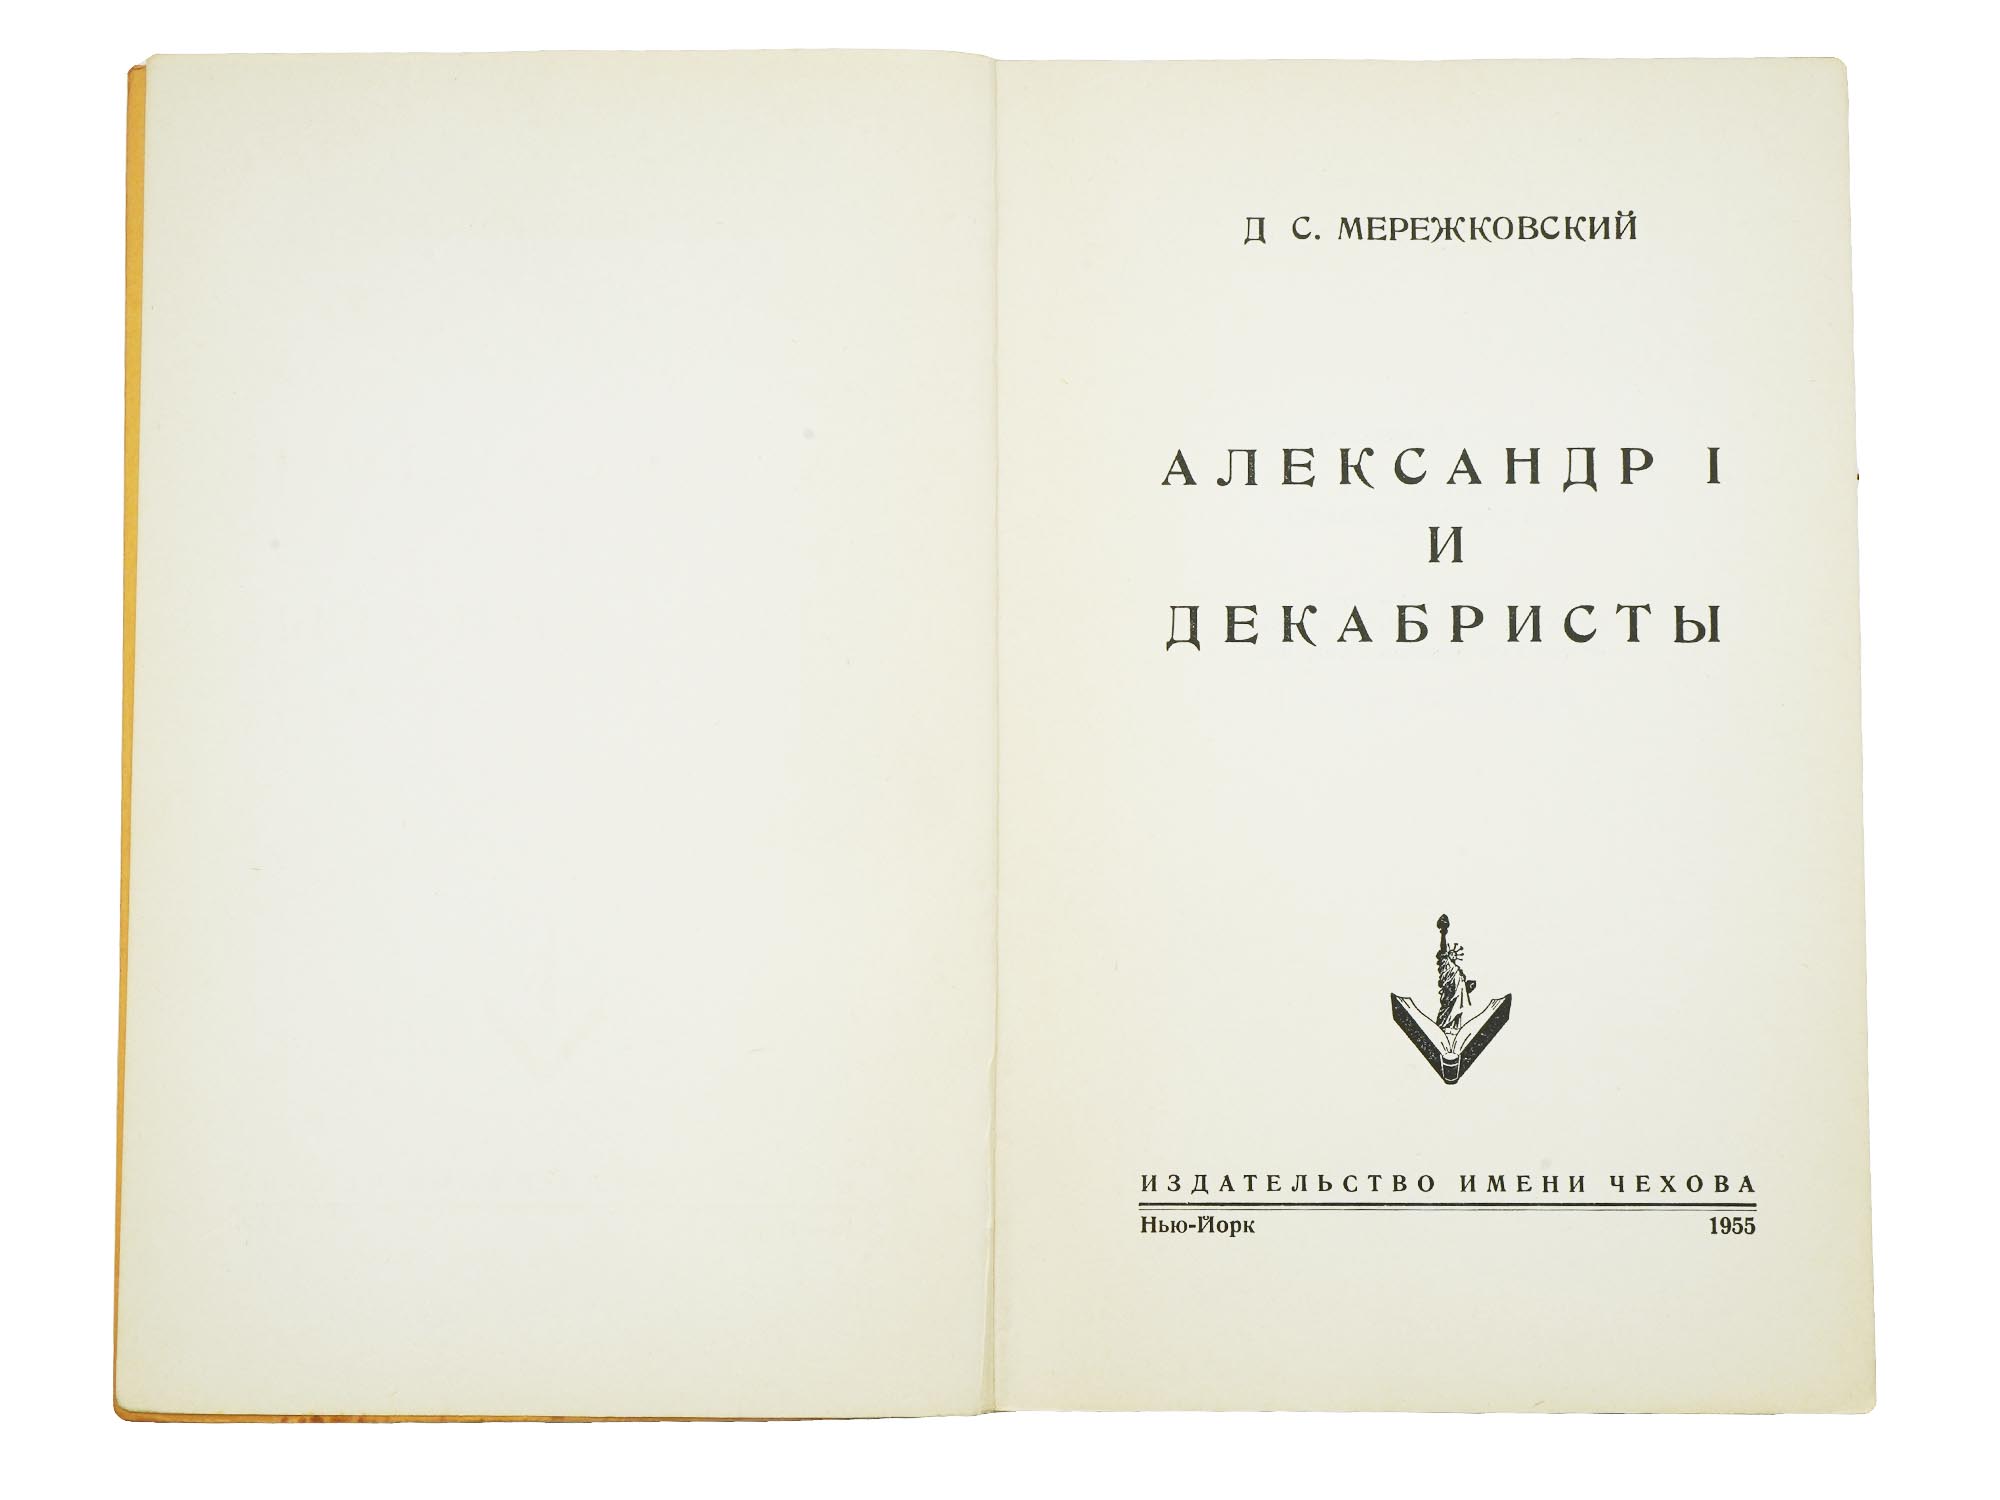 RUSSIAN MEMOIR BOOKS CHEKHOV PUBLISHING HOUSE PIC-8